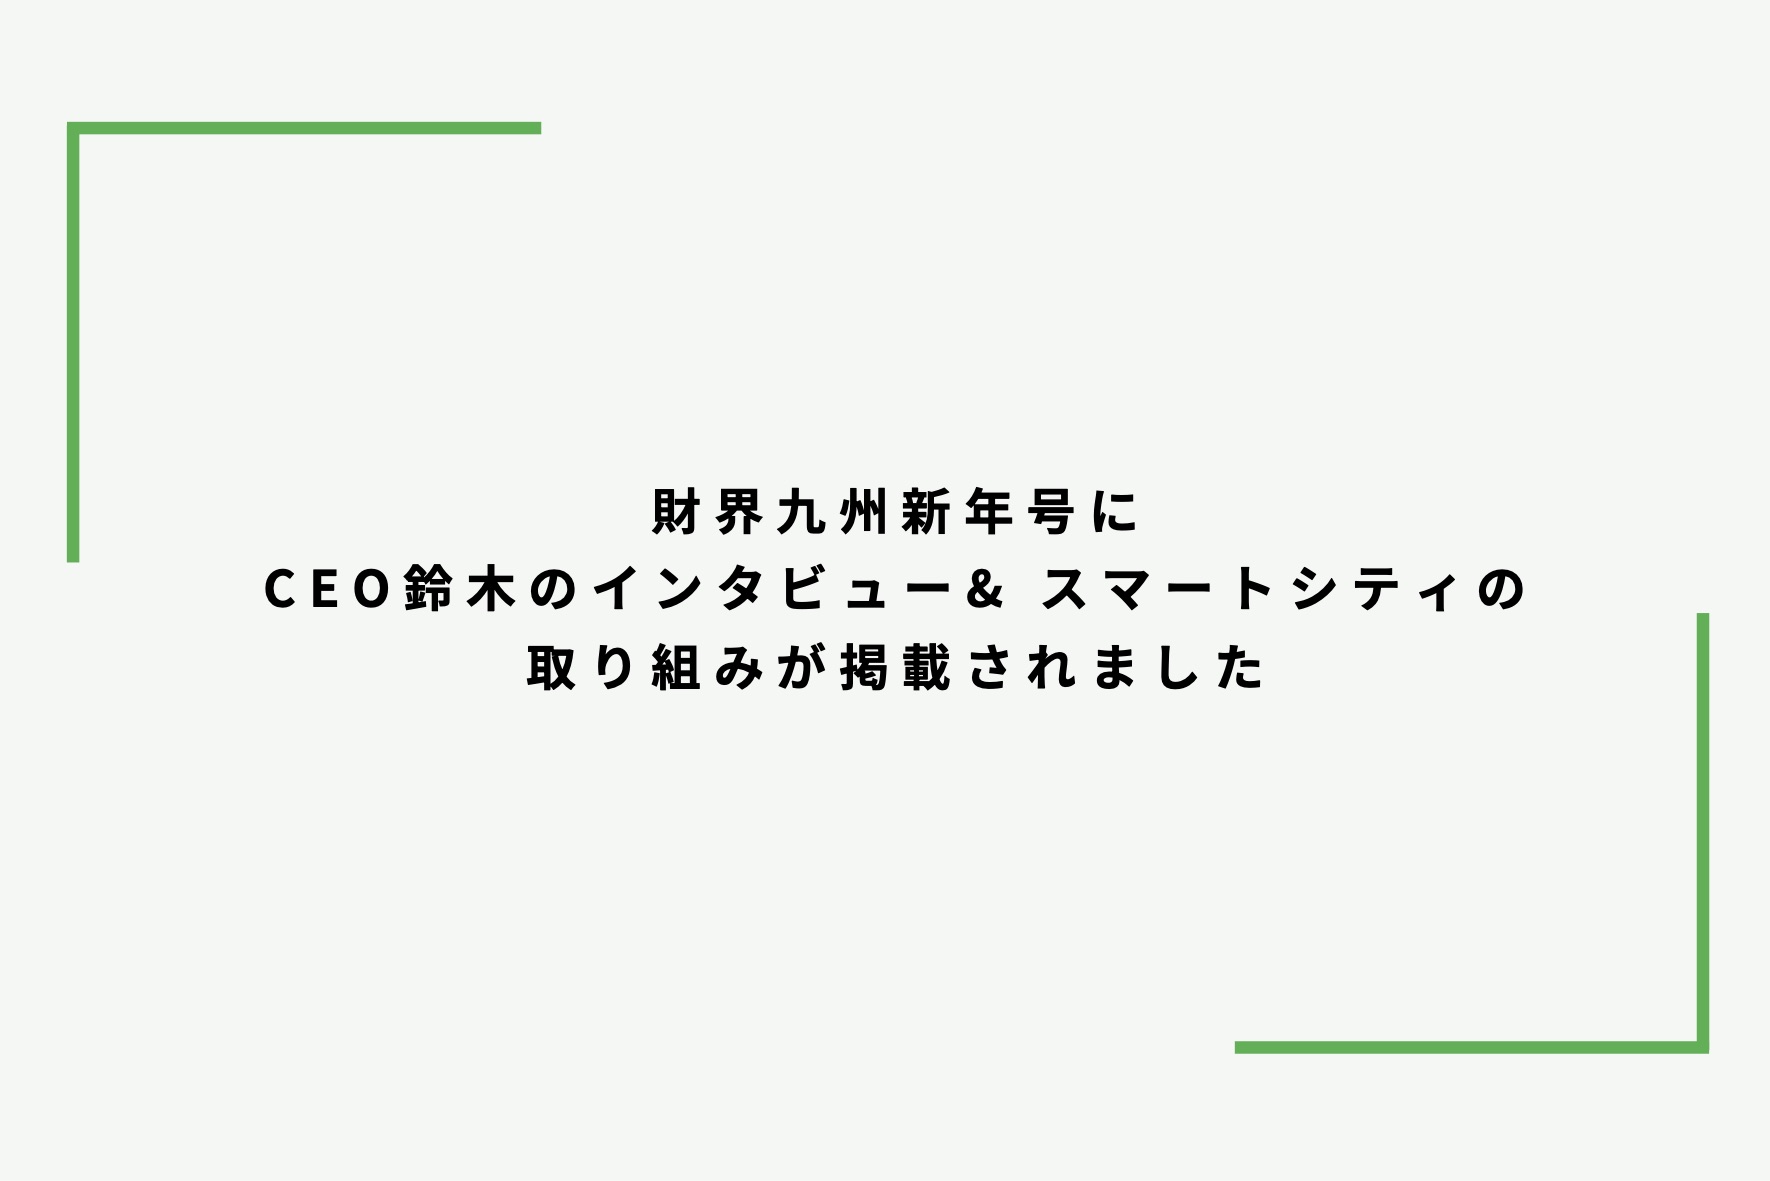 CEO鈴木のインタビュー・スマートシティの取り組みが、財界九州新年号に掲載されました サムネイル画像